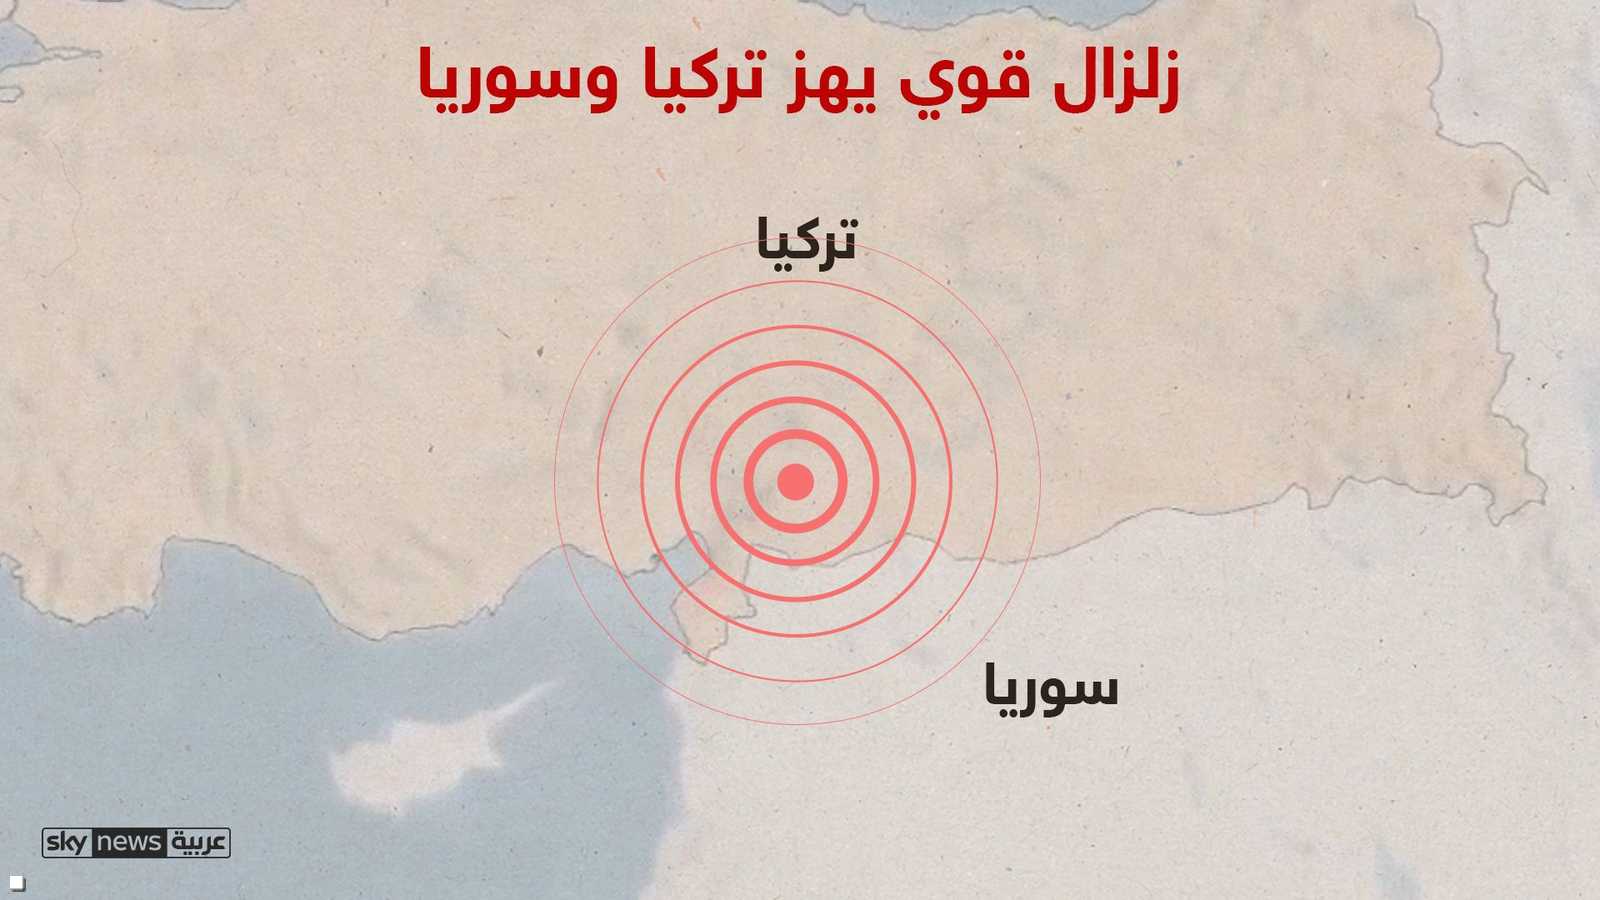 الزلزال وقع على عمق 10 كيلومترات قرب مدينة كهرمان مرعش